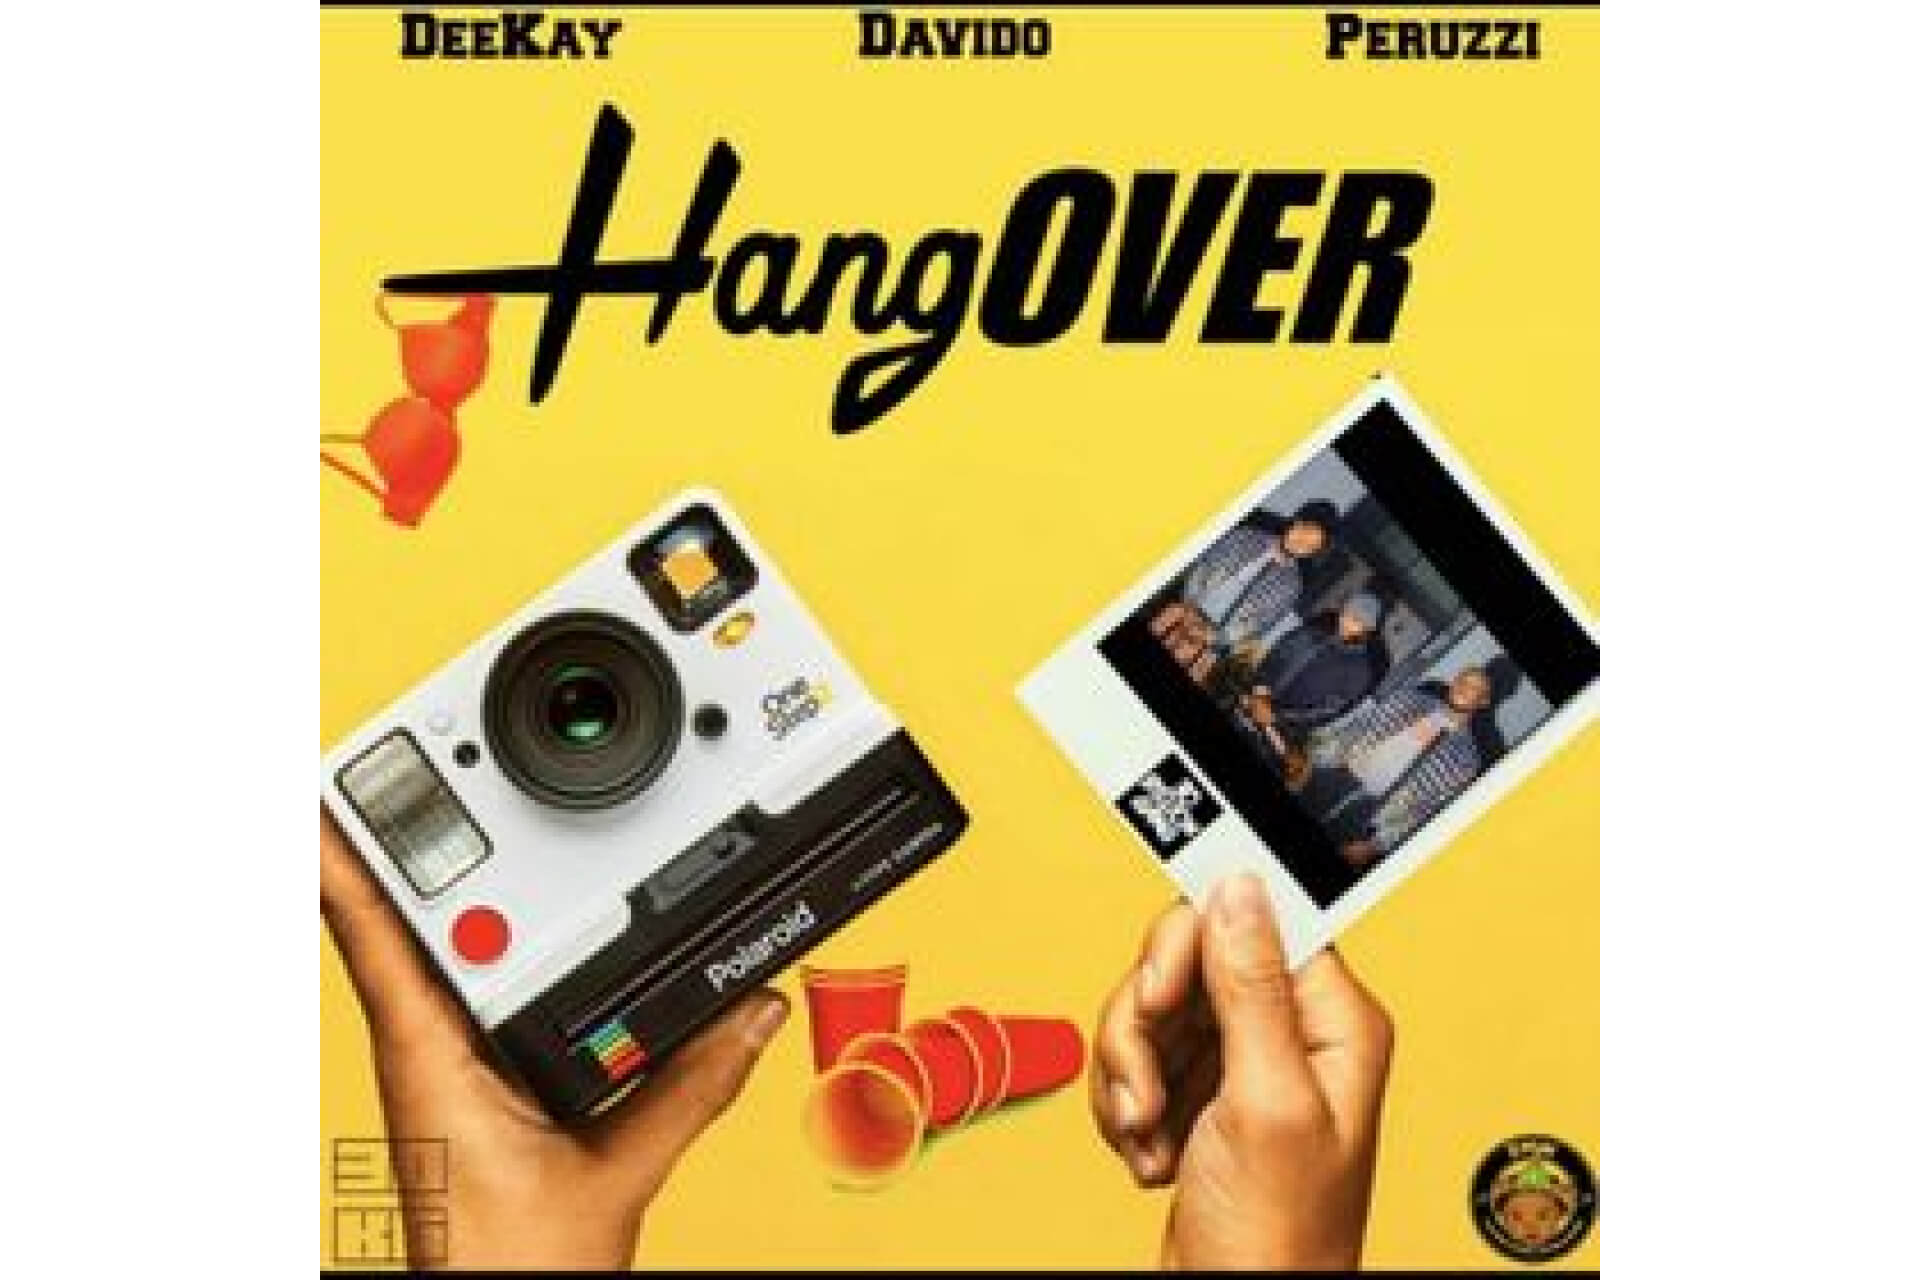 Deekay - Hangover ft. Davido & Peruzzi